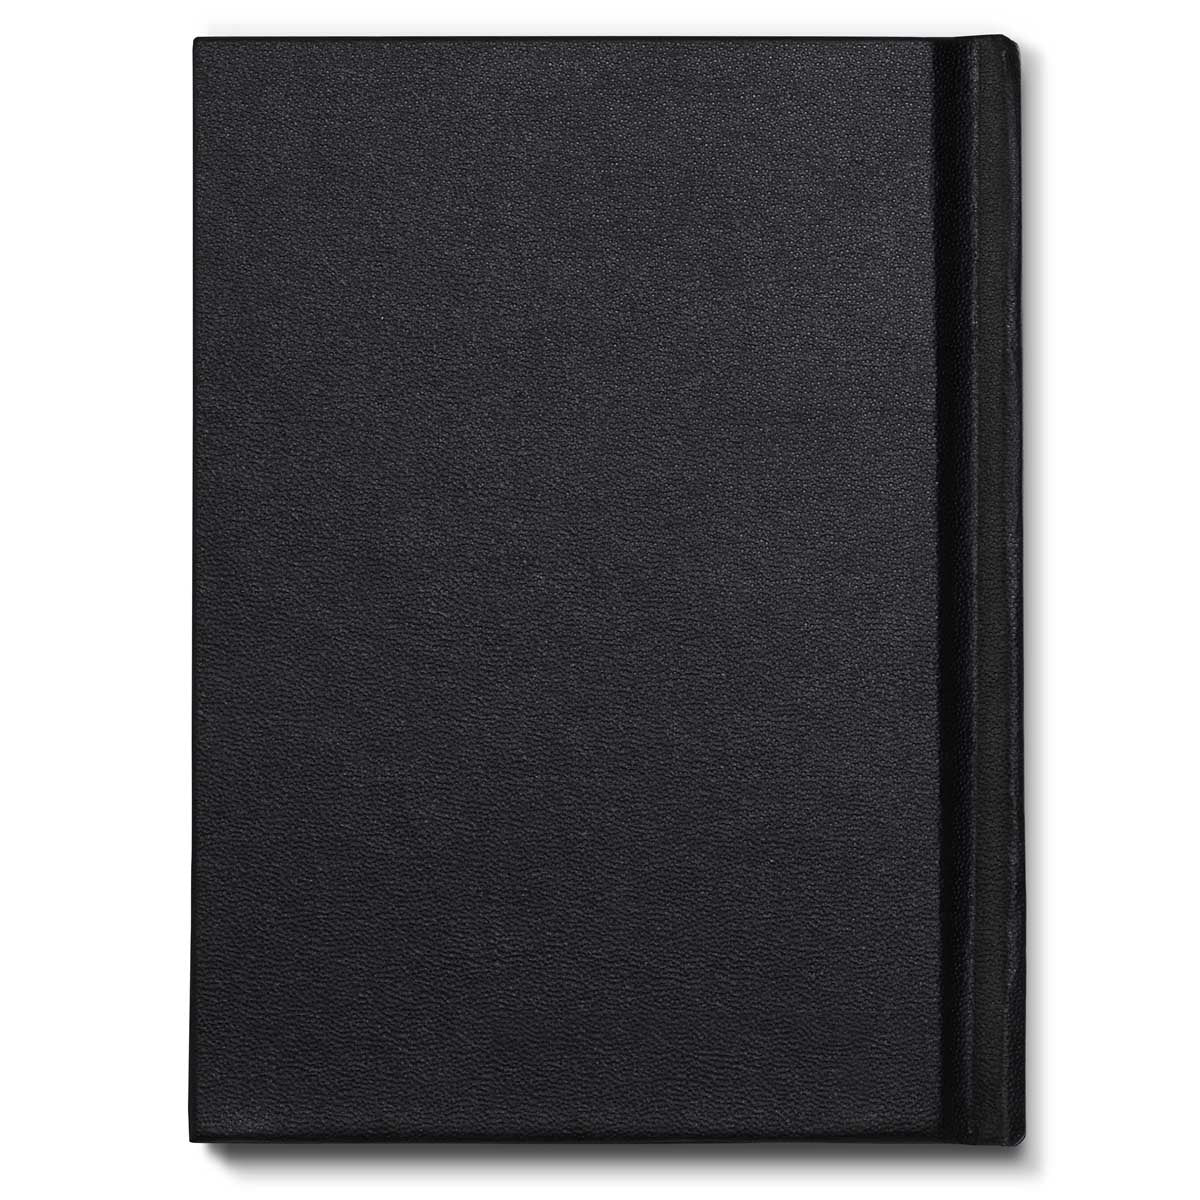 Winsor en Newton - Hardback Bound Sketchbook - 170G A6